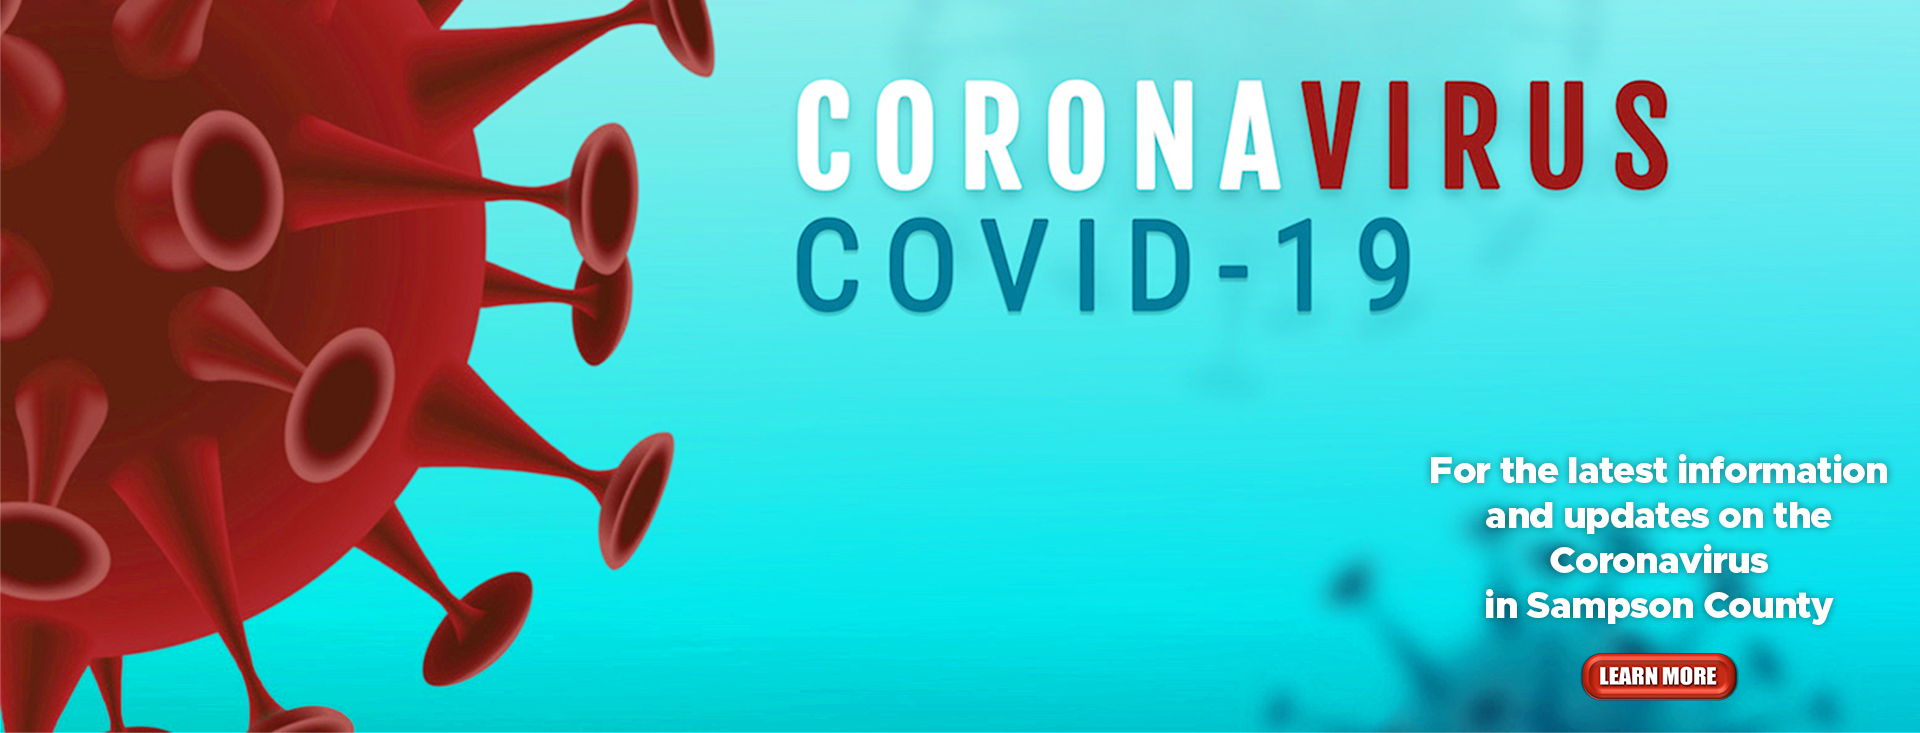 coronavirus web banner